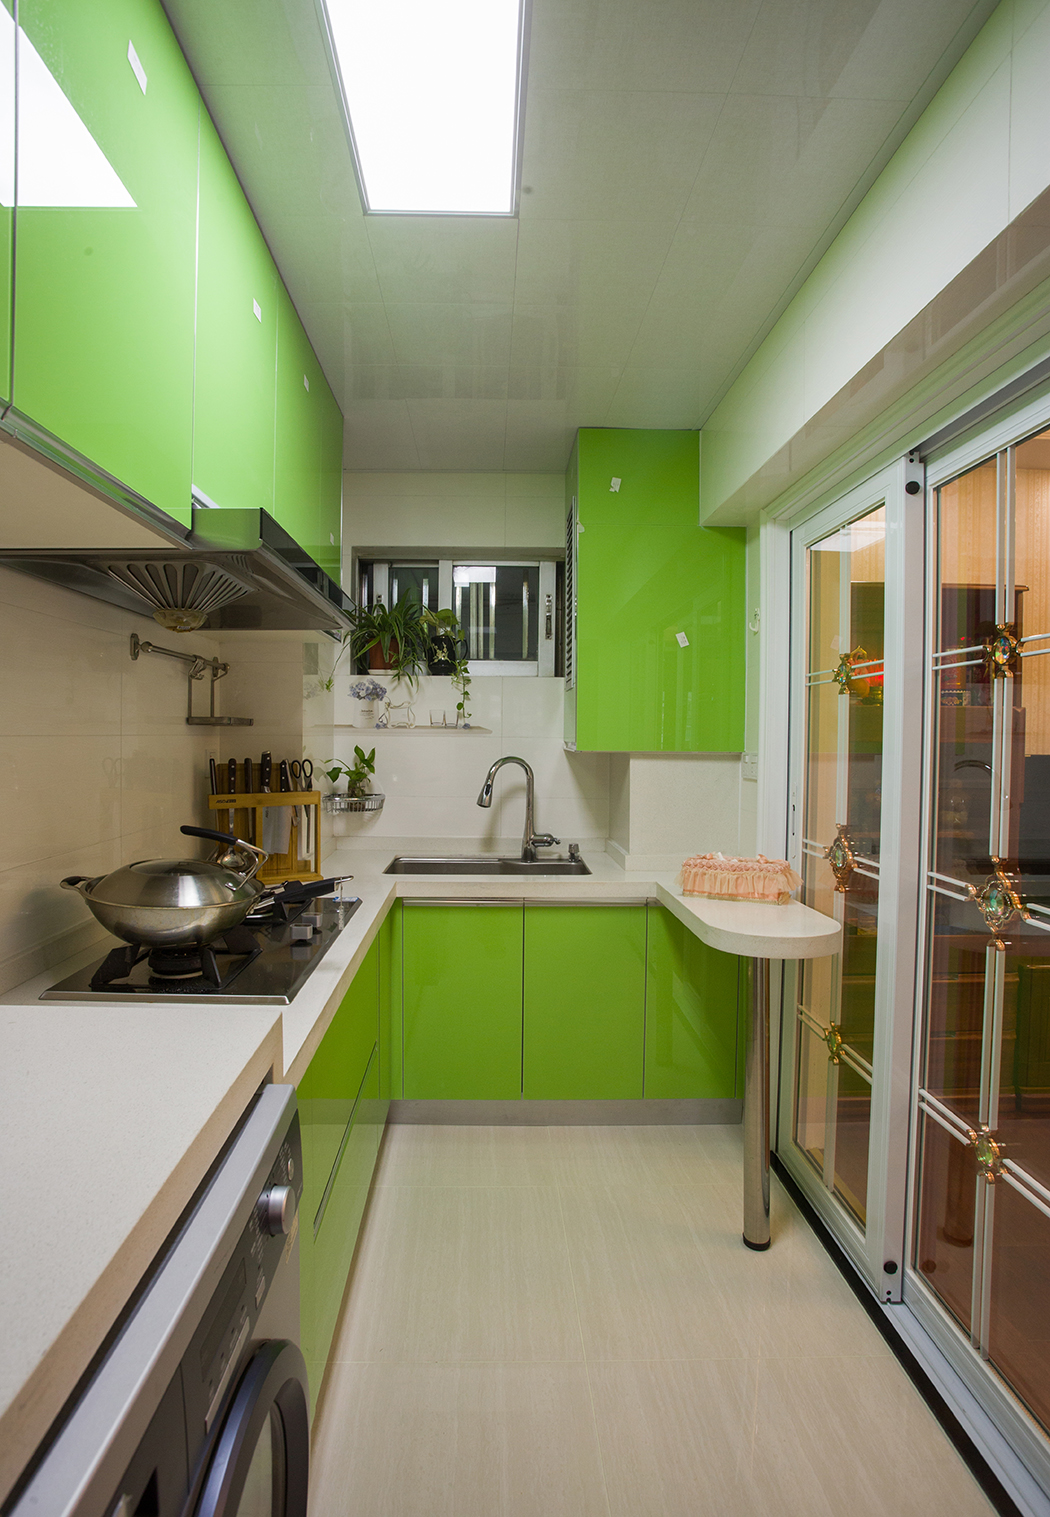 厨房橱柜颜色大胆选用了苹果绿色，凸显美式田园风格的清新自然，生机盎然，厨房以功能实用为主，L型橱柜加小吧台的设计大大提升厨房的实用性，橱柜内嵌的冰箱和烘干机，都使空间得到充分利用。
